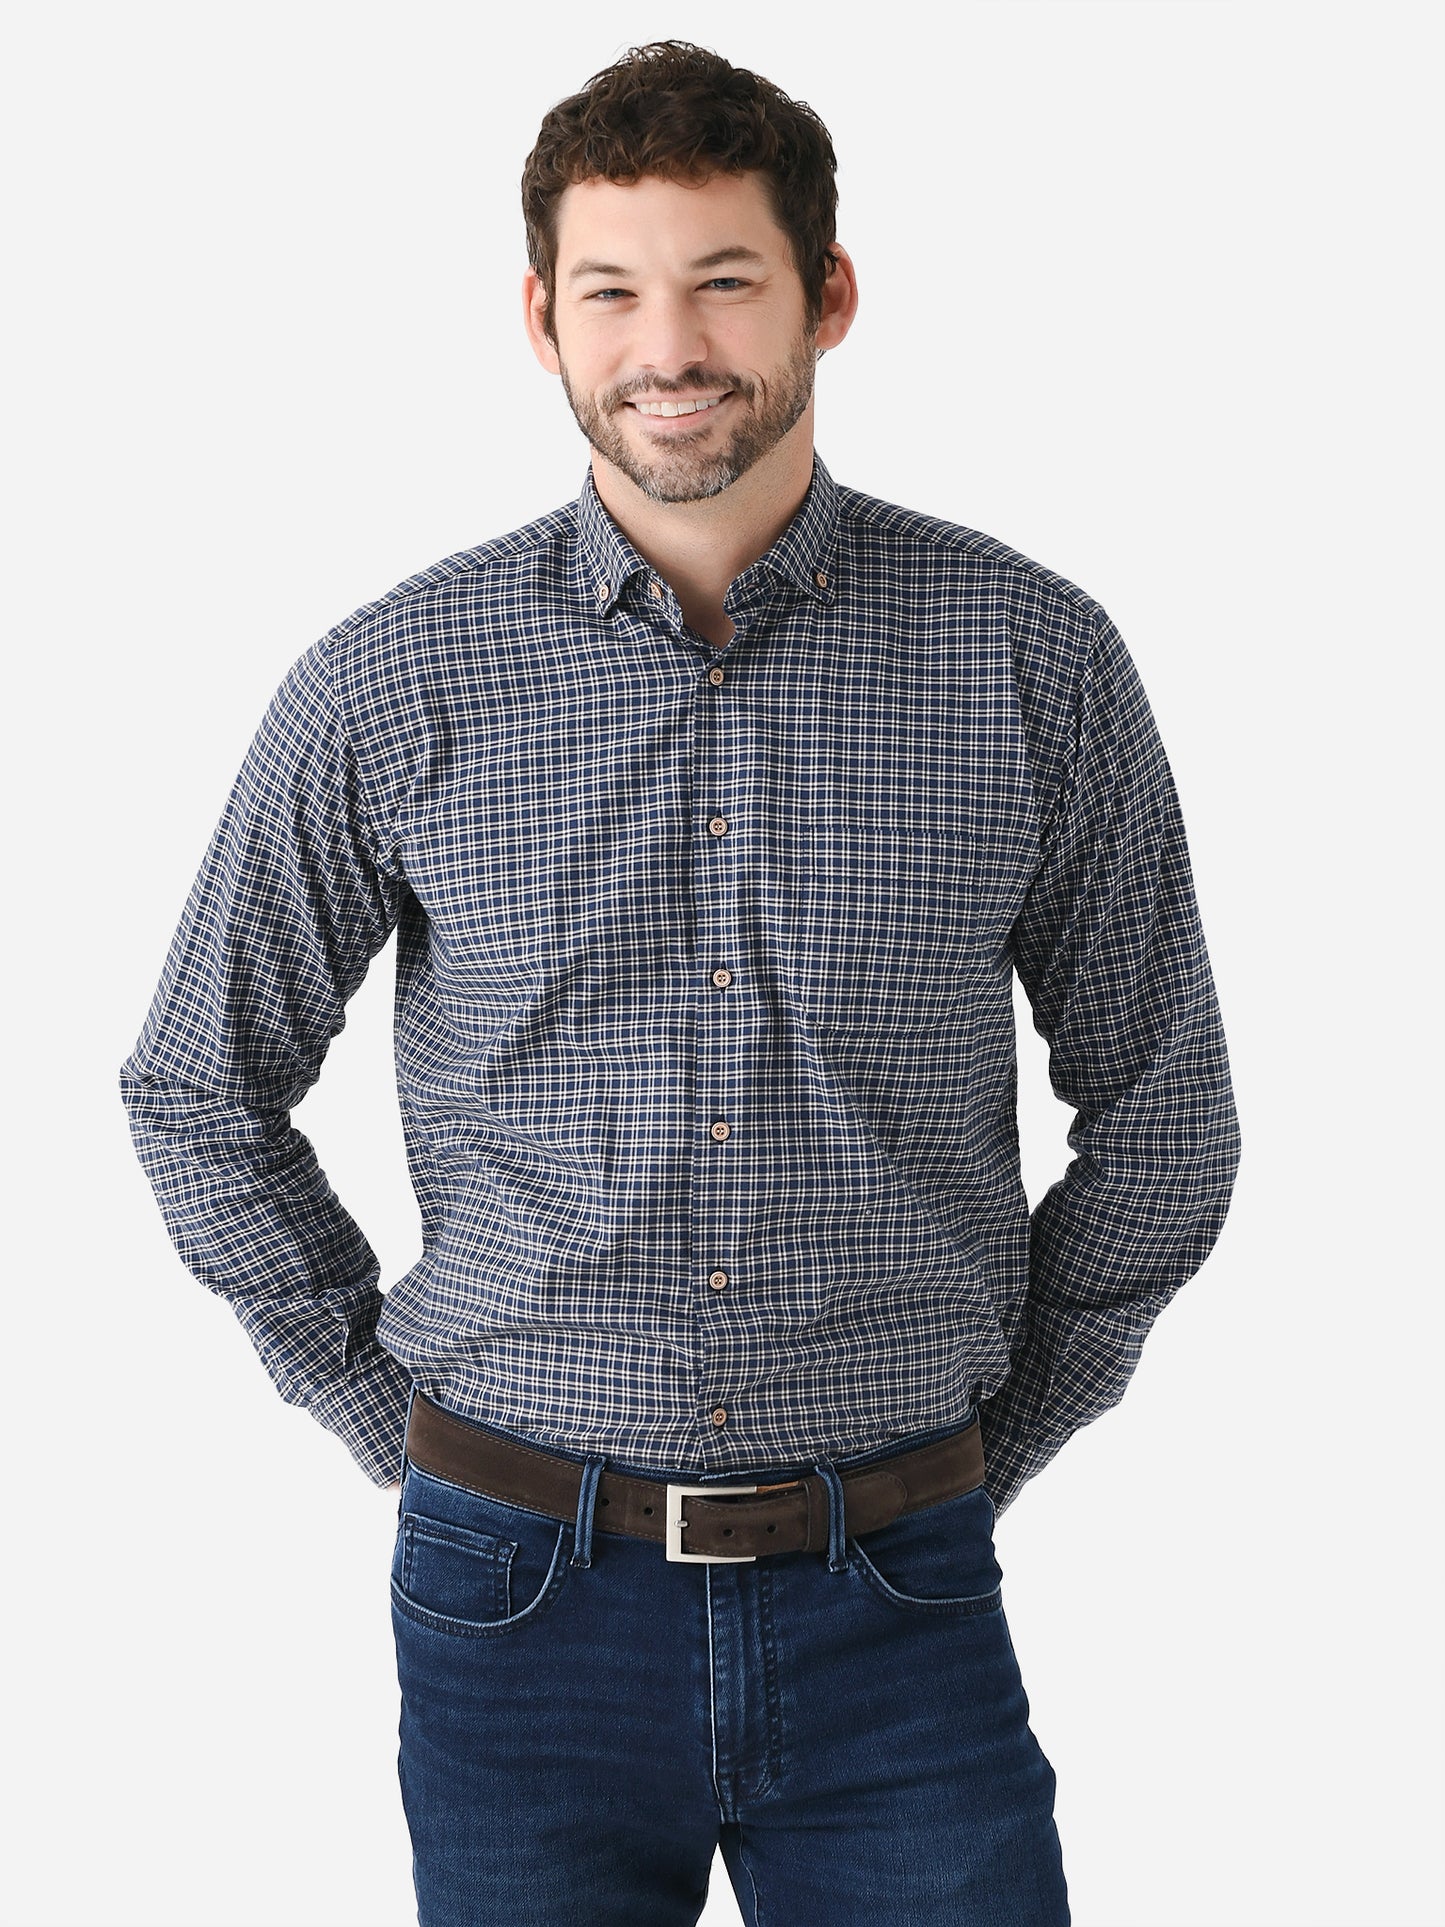 Miller Westby Men's Calumet Button-Down Shirt